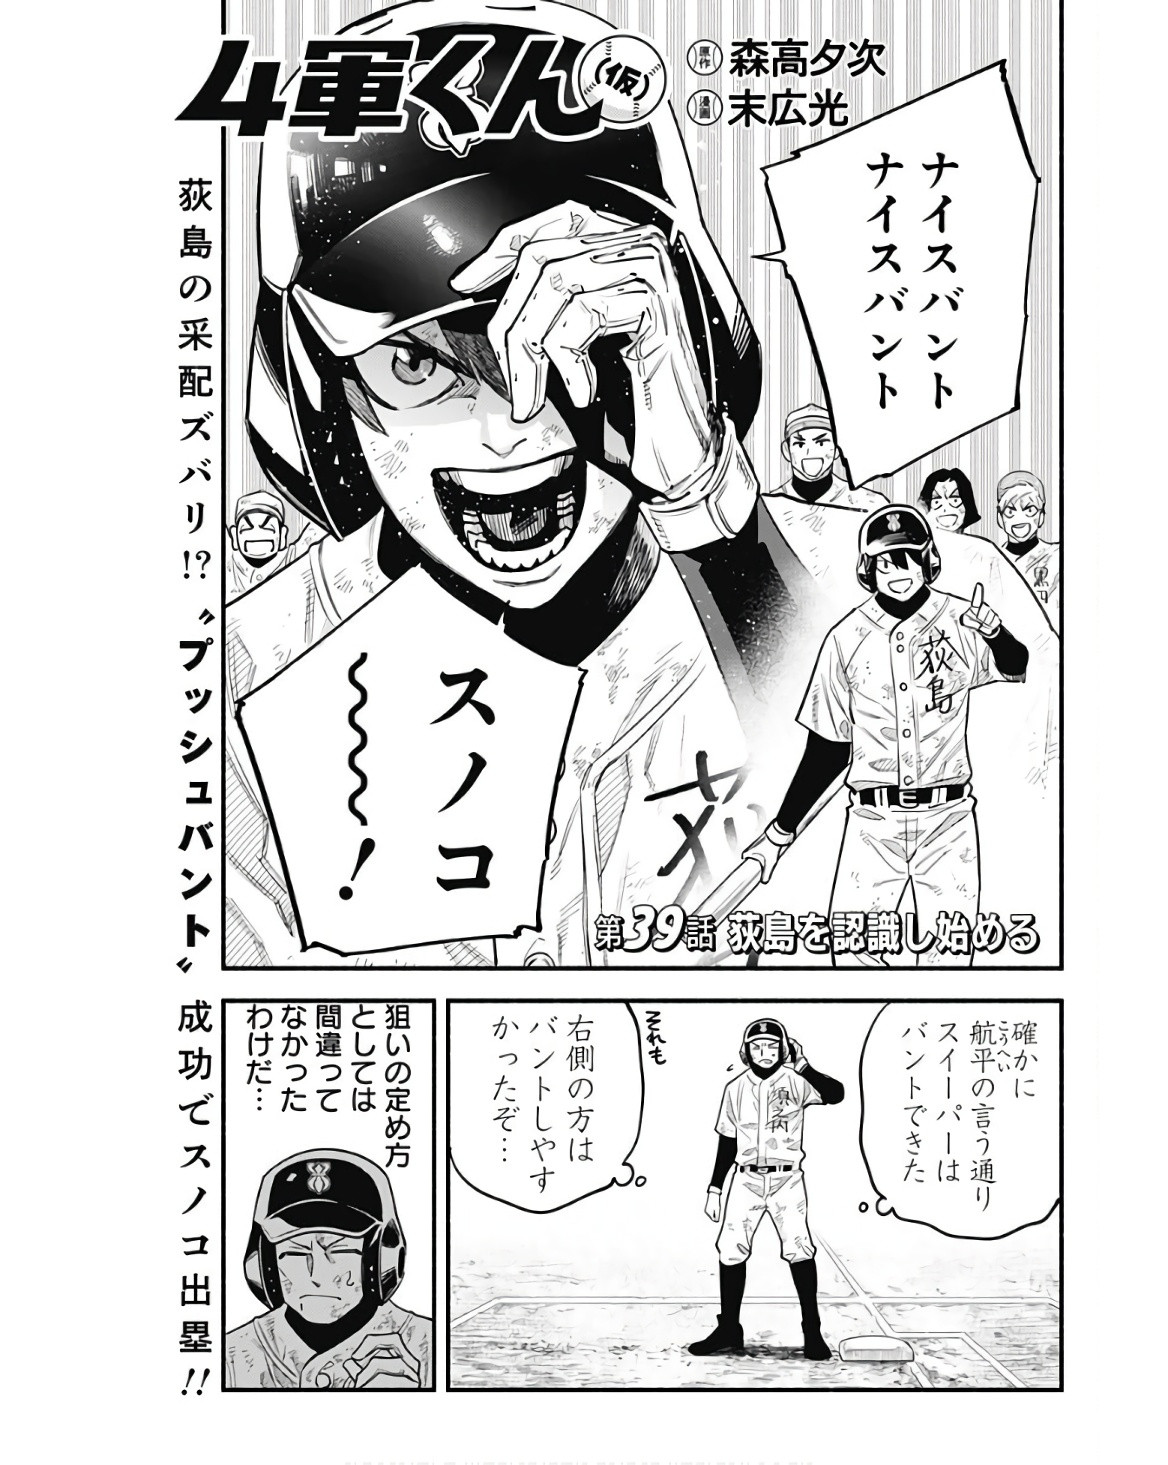 4-gun-kun (Kari) - Chapter 39 - Page 1